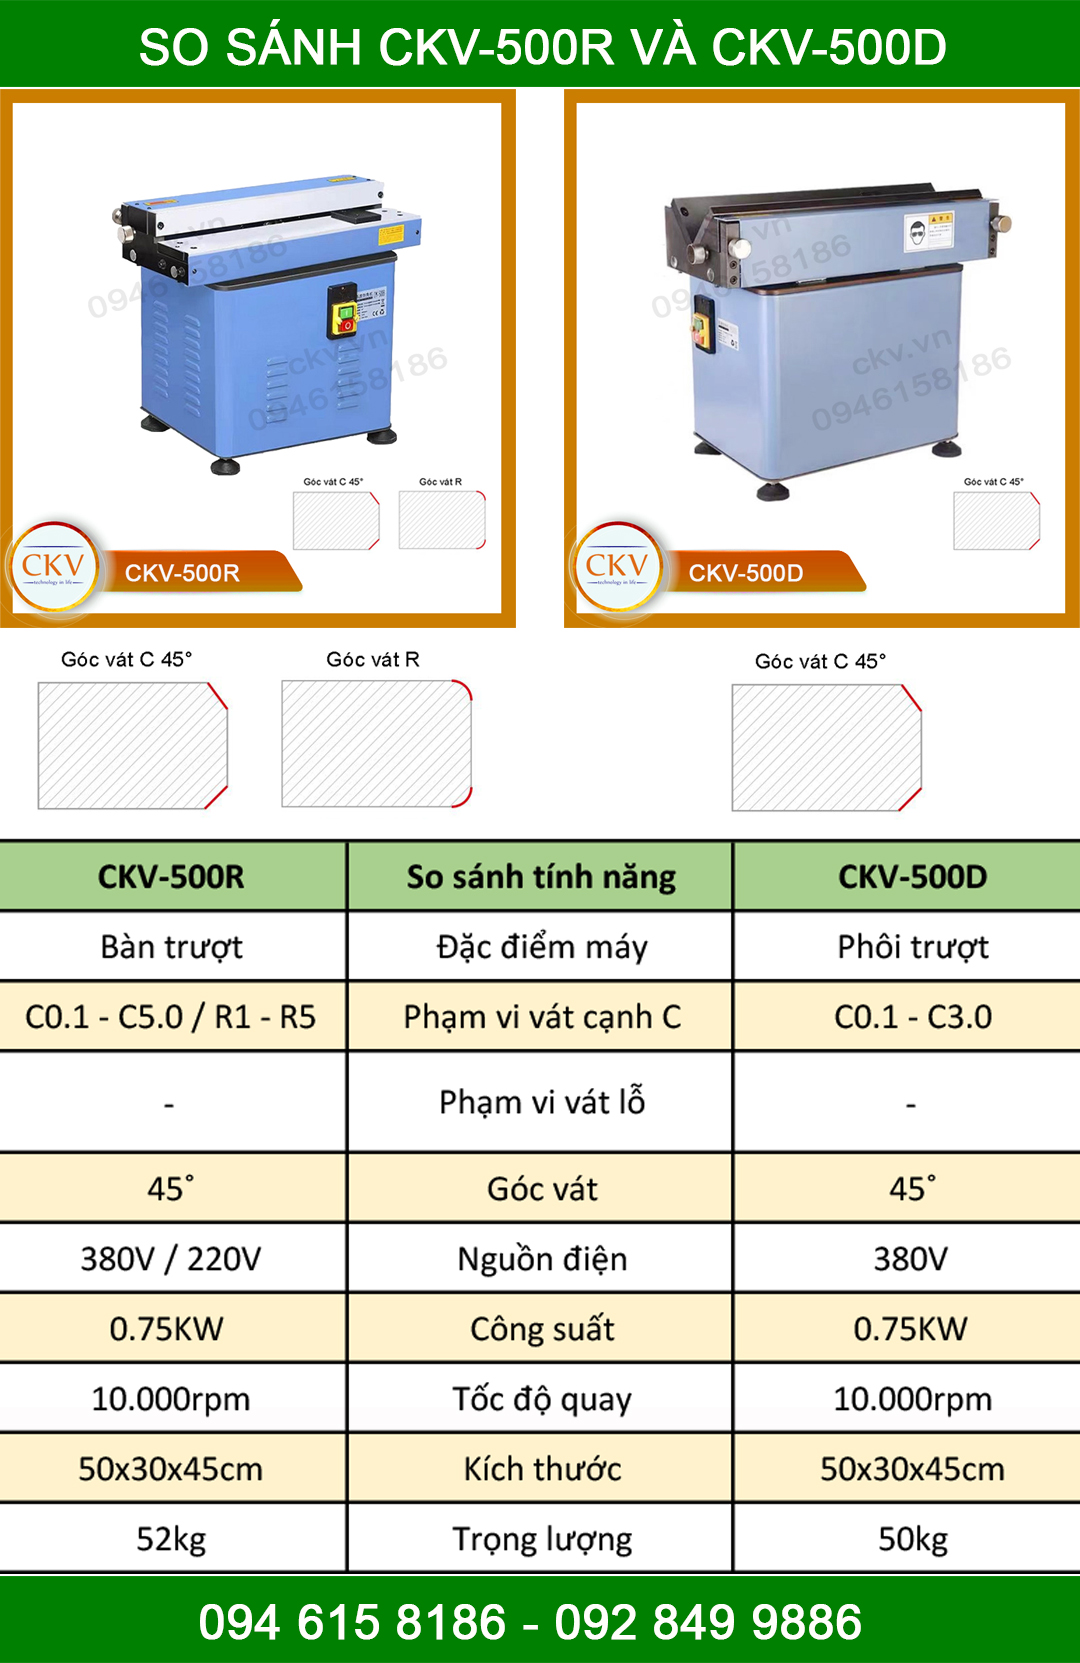 So sánh CKV-500R với CKV-500D